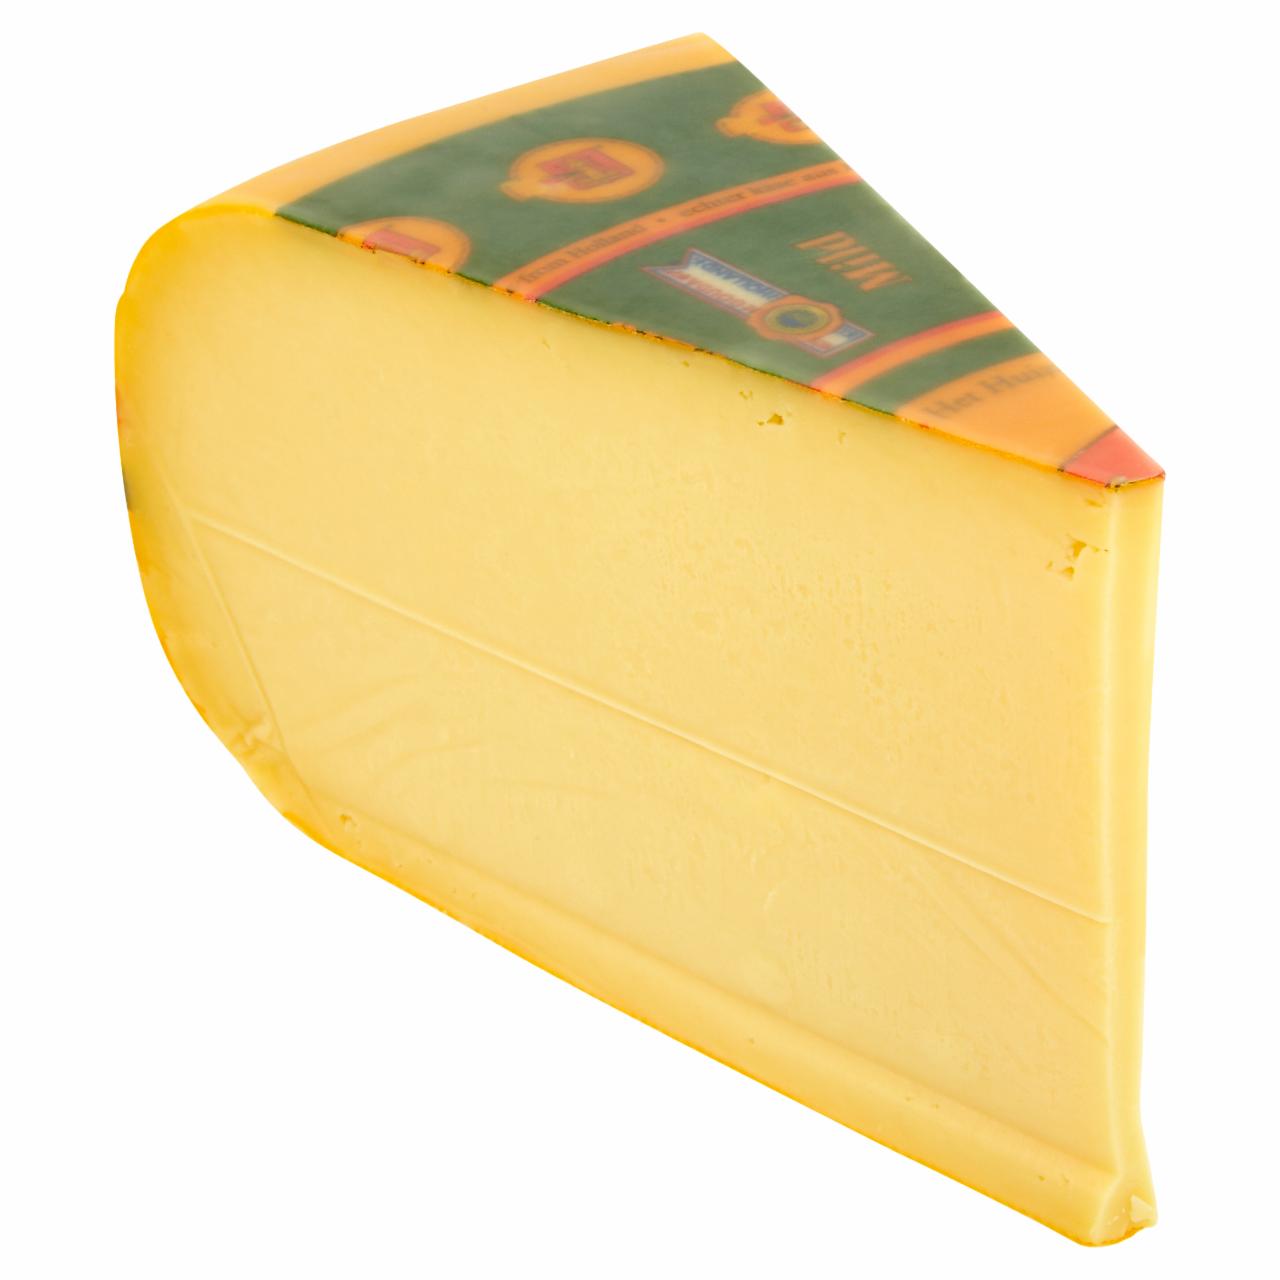 Képek - Eredeti holland zsíros, félkemény gouda sajt